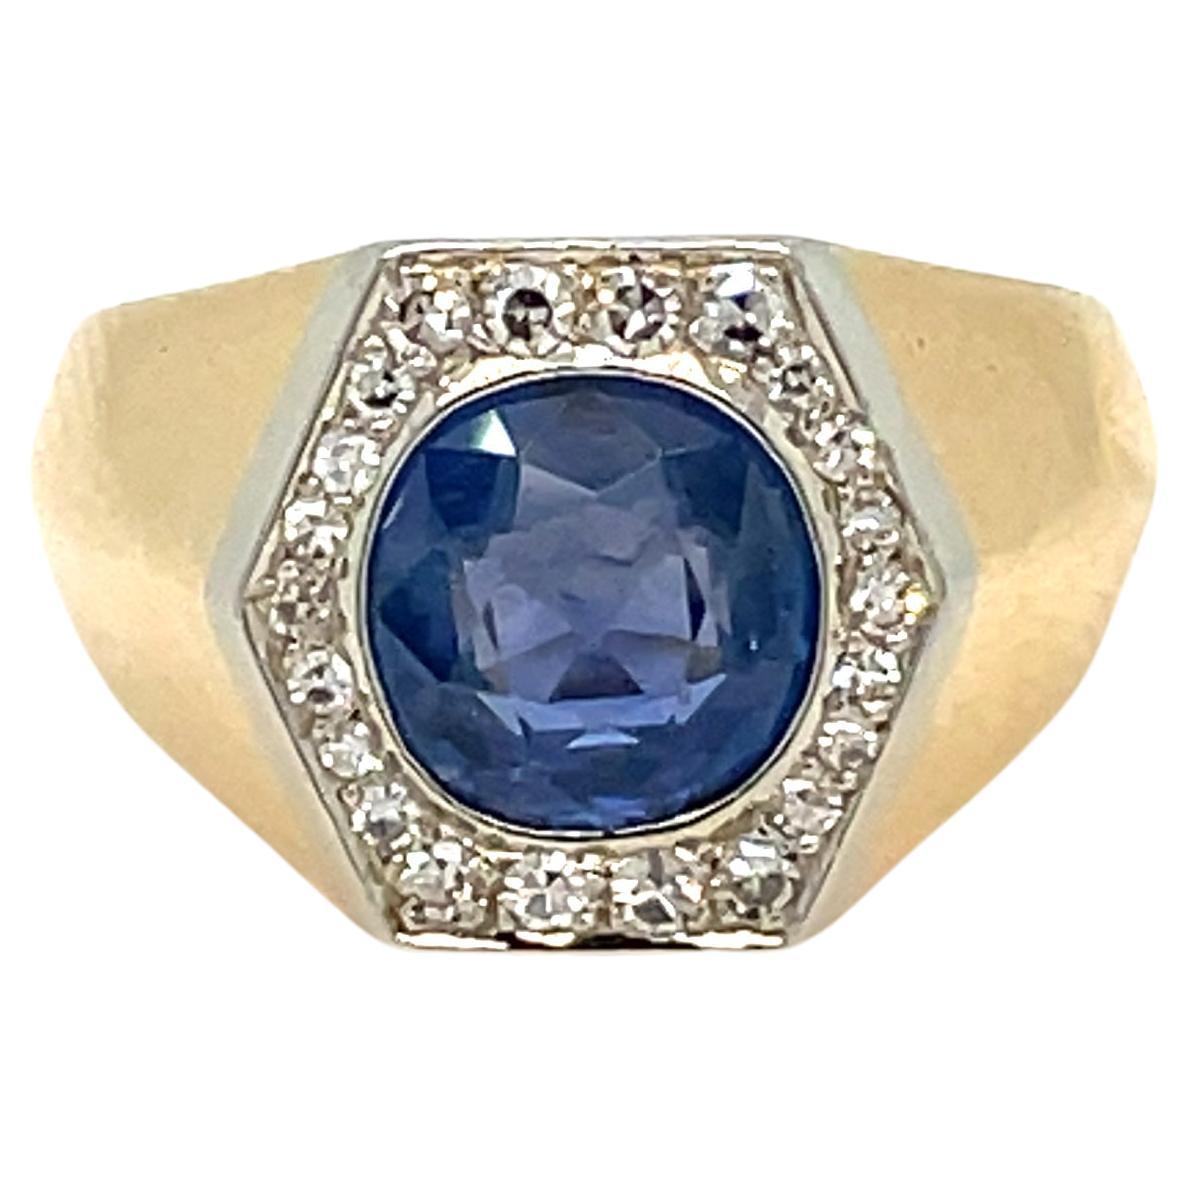 Art Deco Platin-Goldring mit zertifiziertem 2,50 Karat Saphir und Diamant